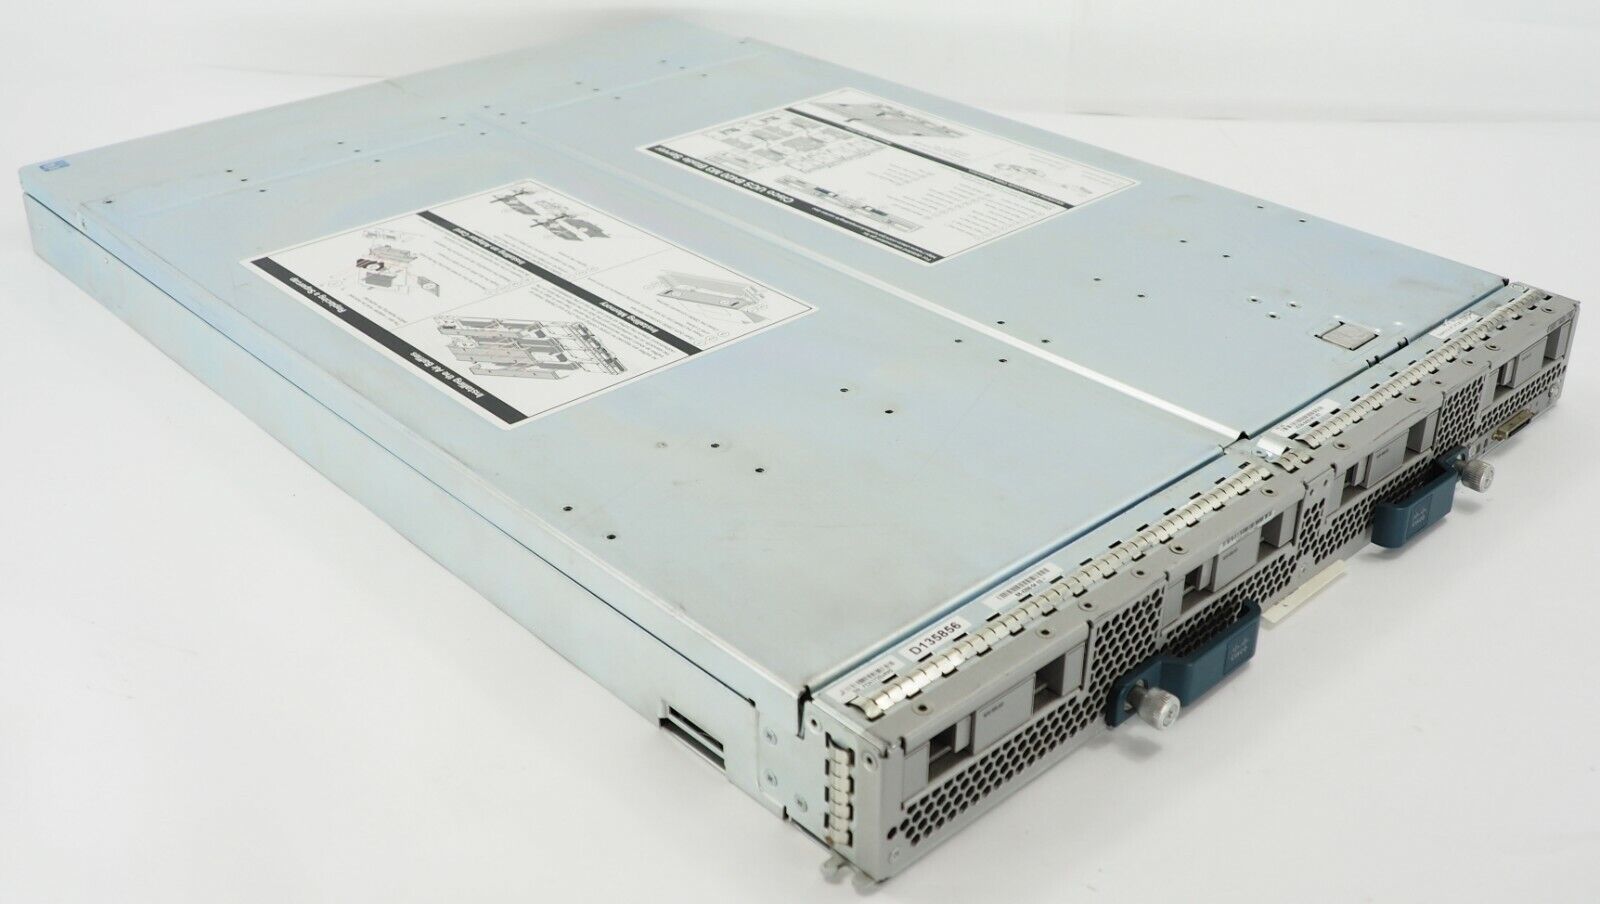 Cisco UCSB-B420-M3 V01 UCS B420 M3 BLADE SERVER (NO RAM CPU or HDDS)